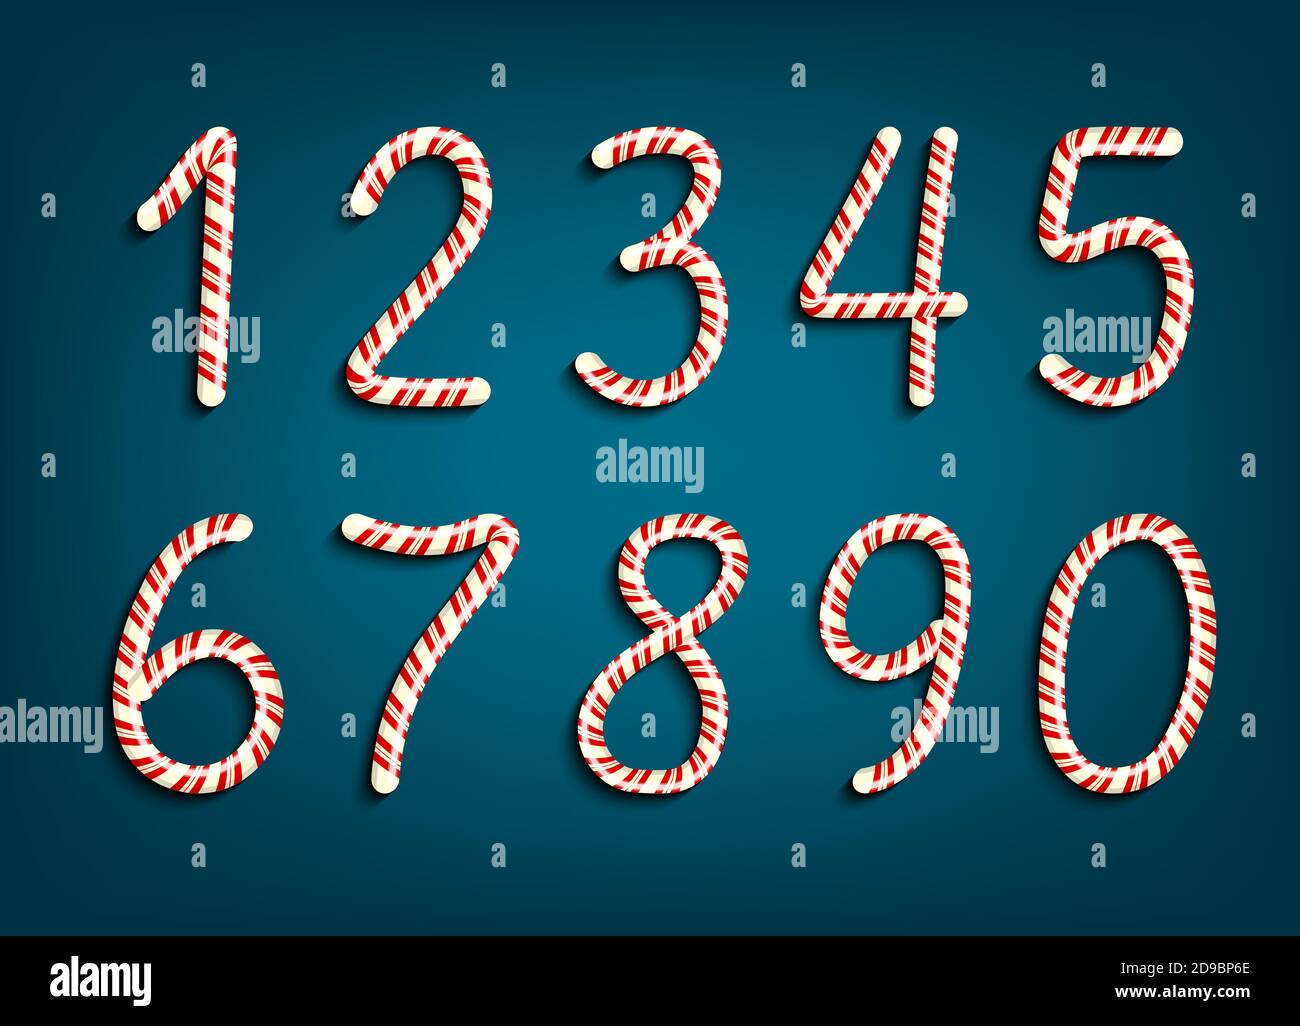 Zahlen in rot und weiß Strudel Candy Lollipop Stil gesetzt. Vektorgrafik Stock Vektor